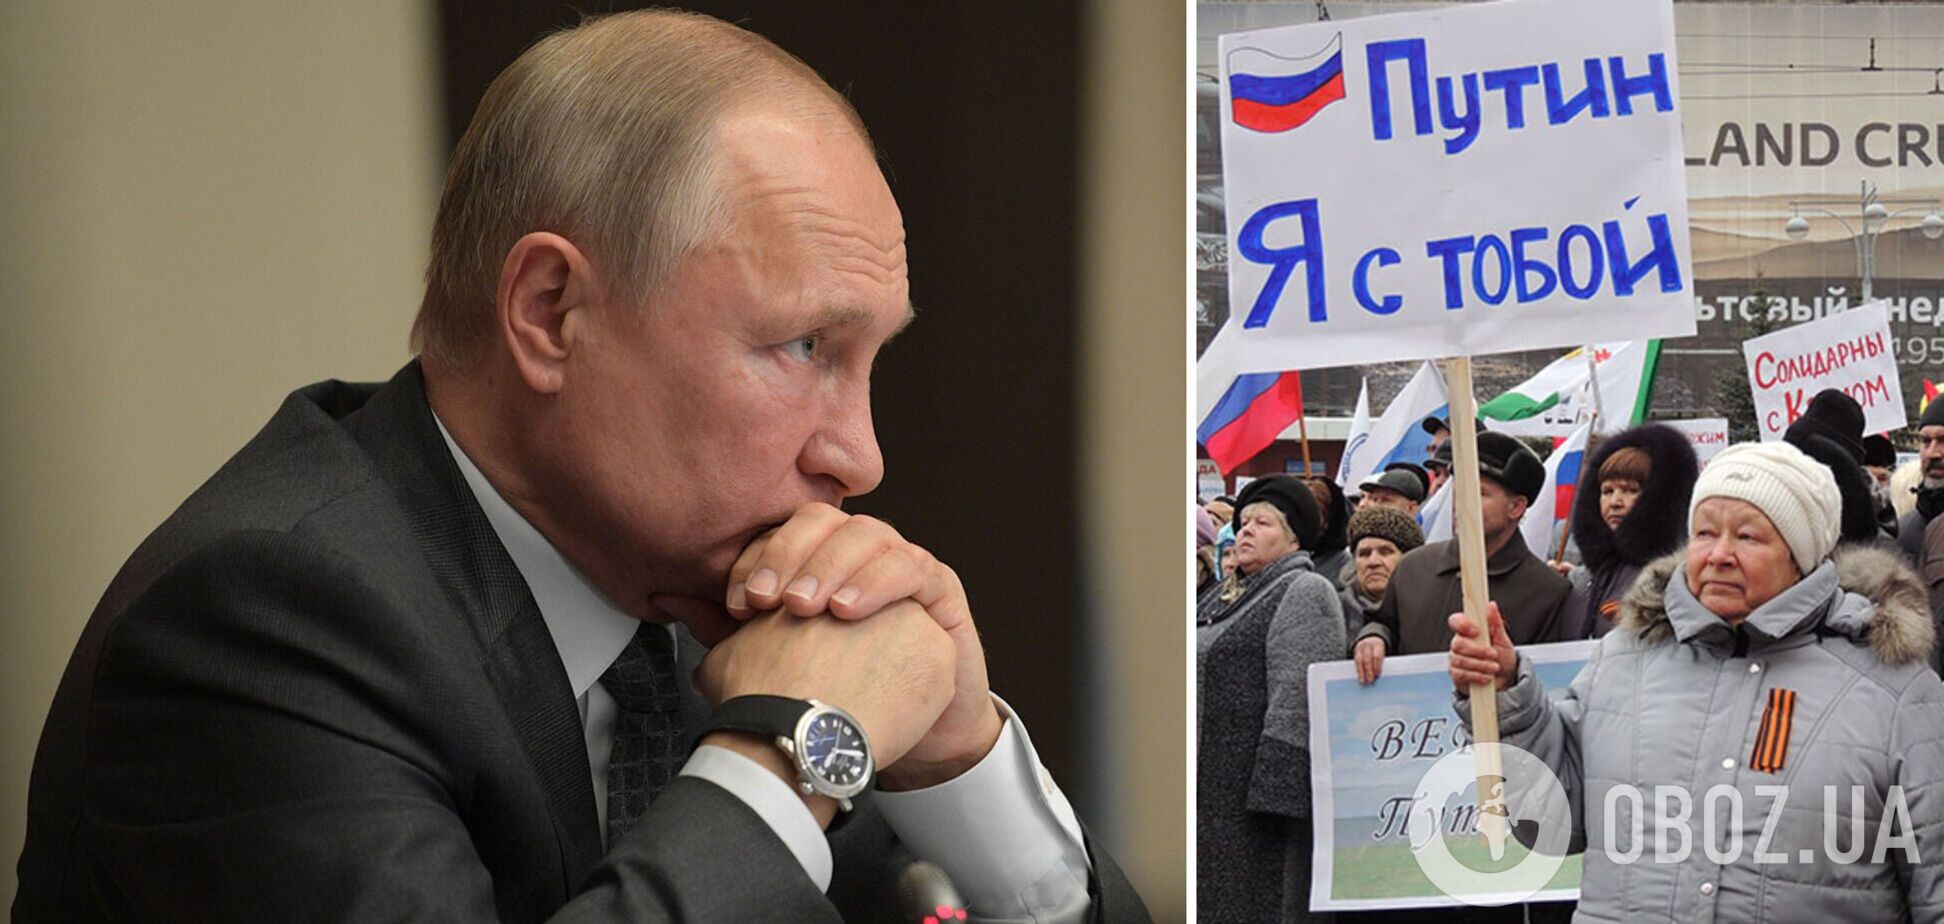 Фанаты Путина поддержали войну против Украины